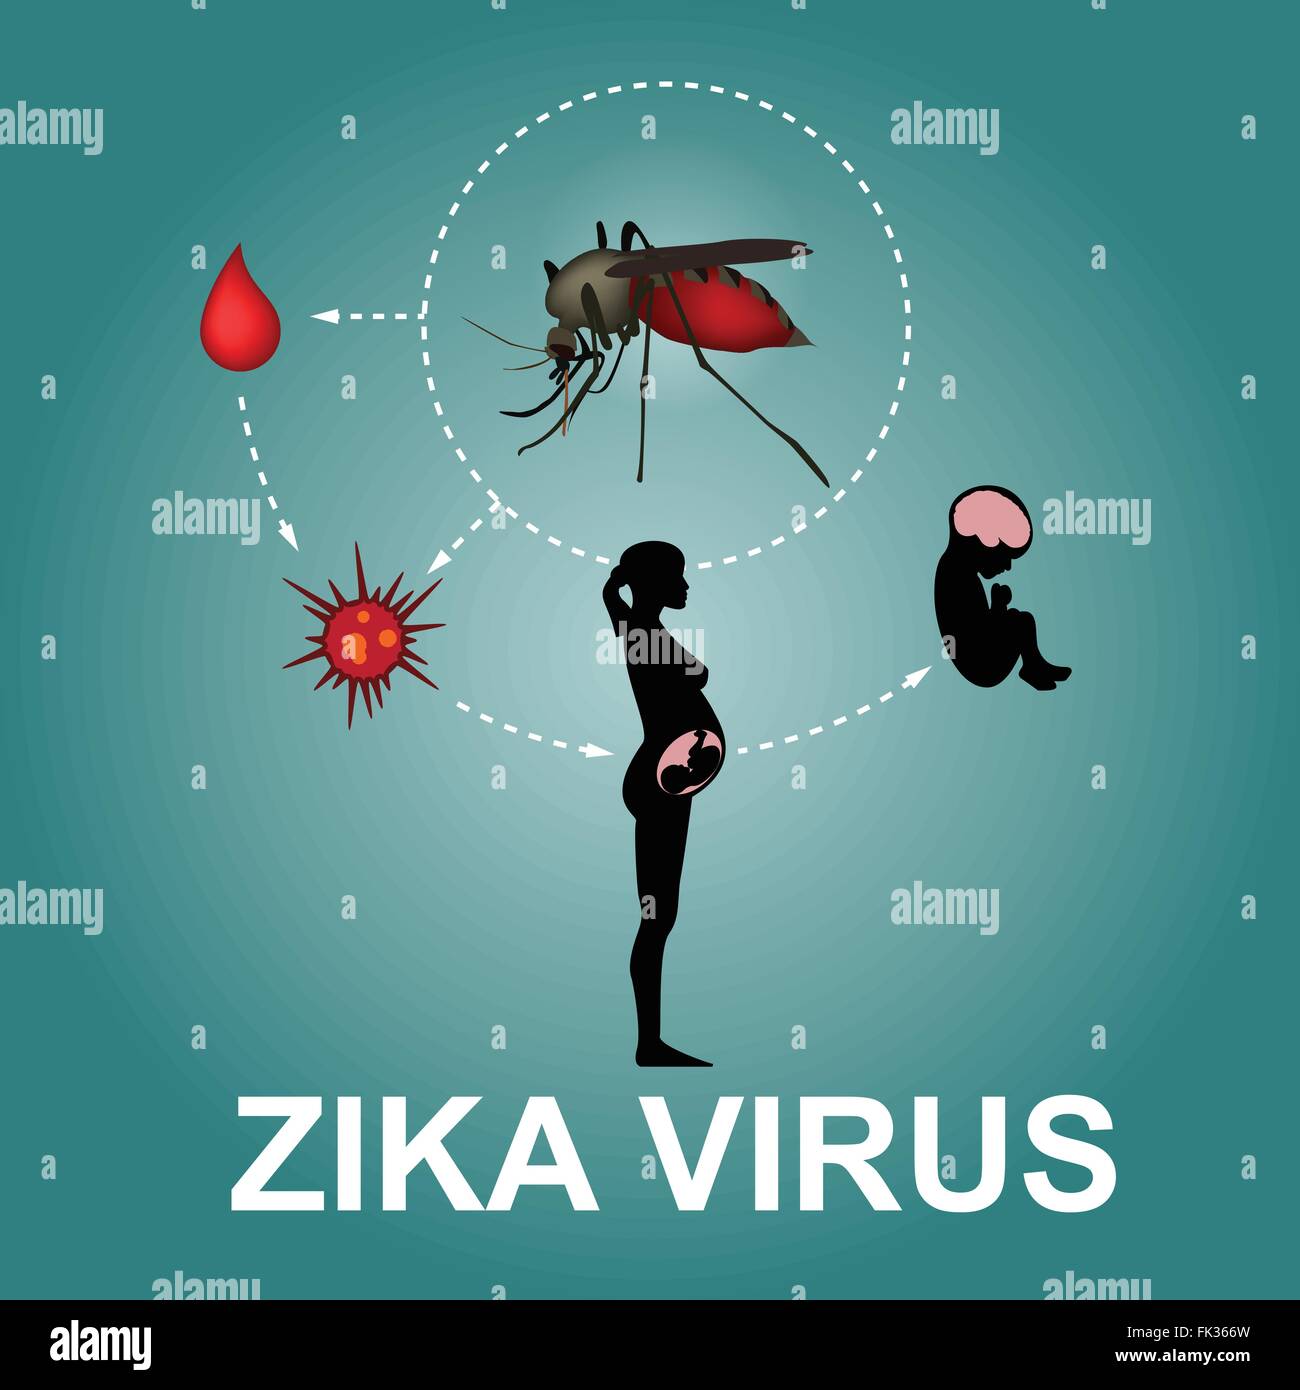 Zika virus, vector Stock Vector